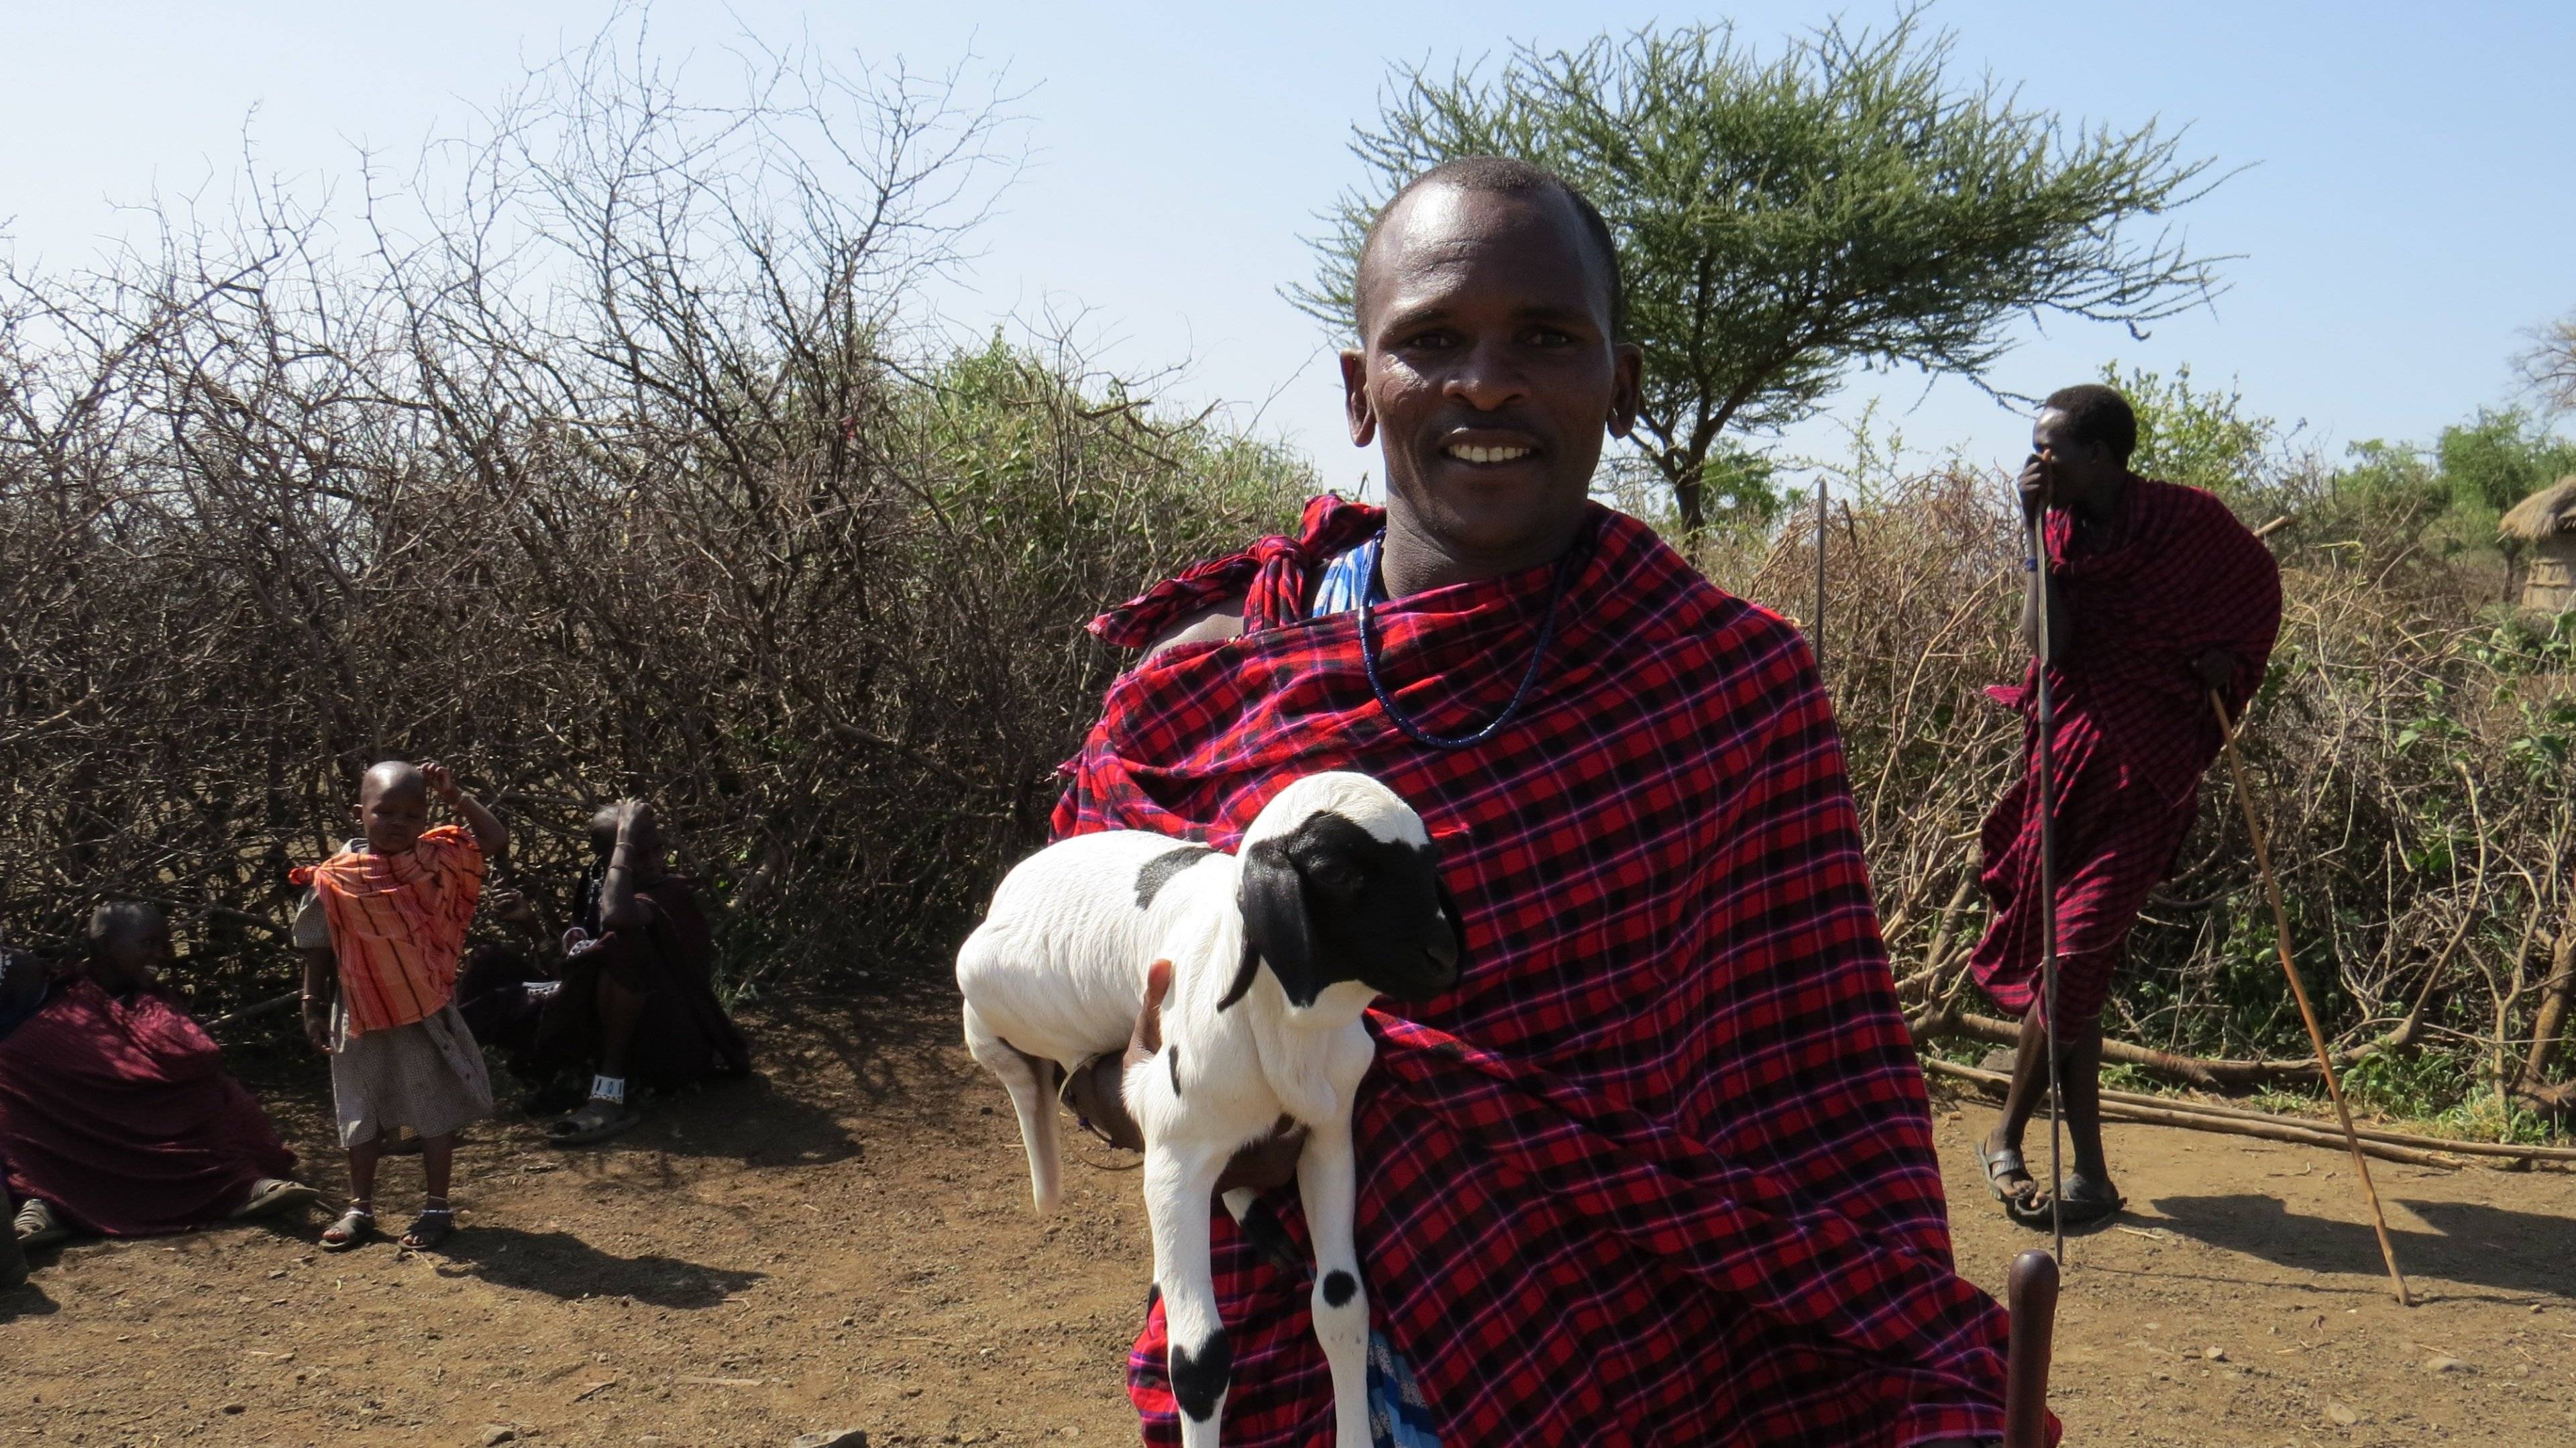 Maak kennis met de Maasai-cultuur